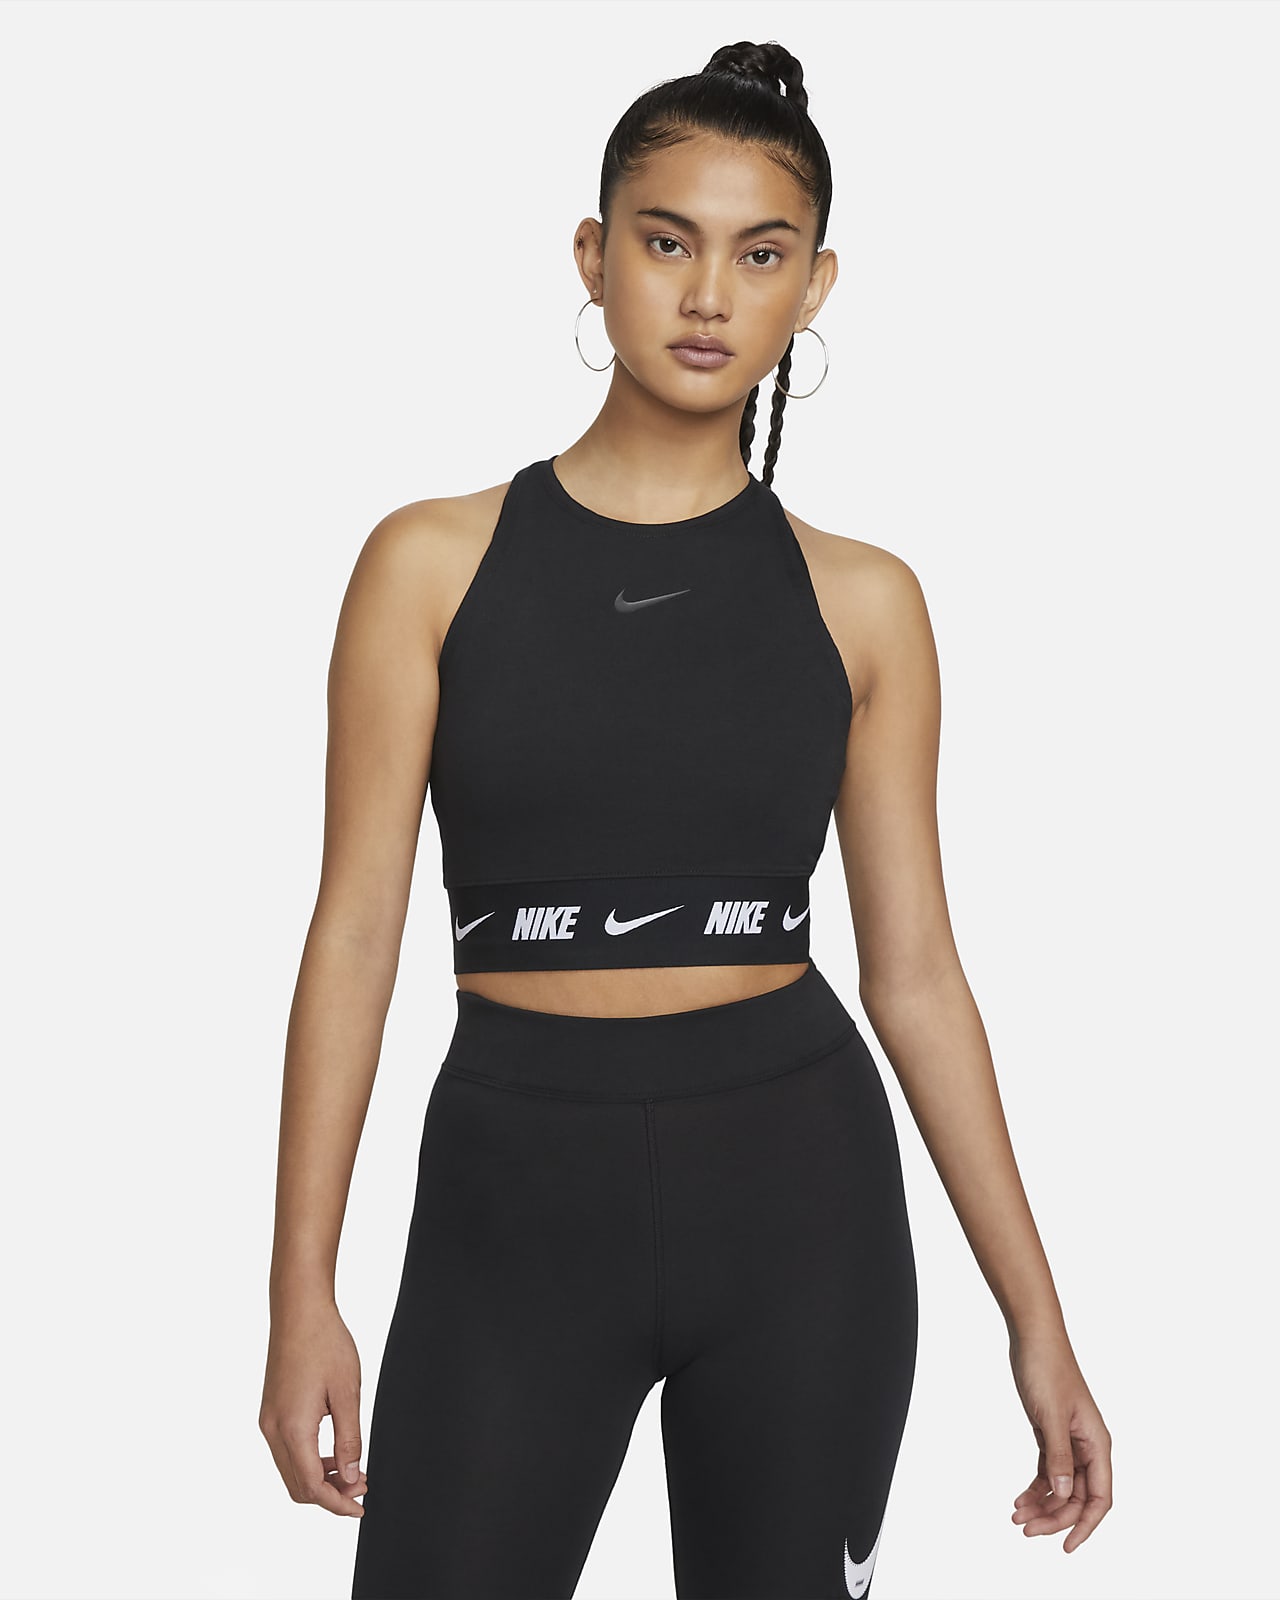 Wees tevreden auteur Verantwoordelijk persoon Nike Sportswear Women's Crop Top. Nike.com